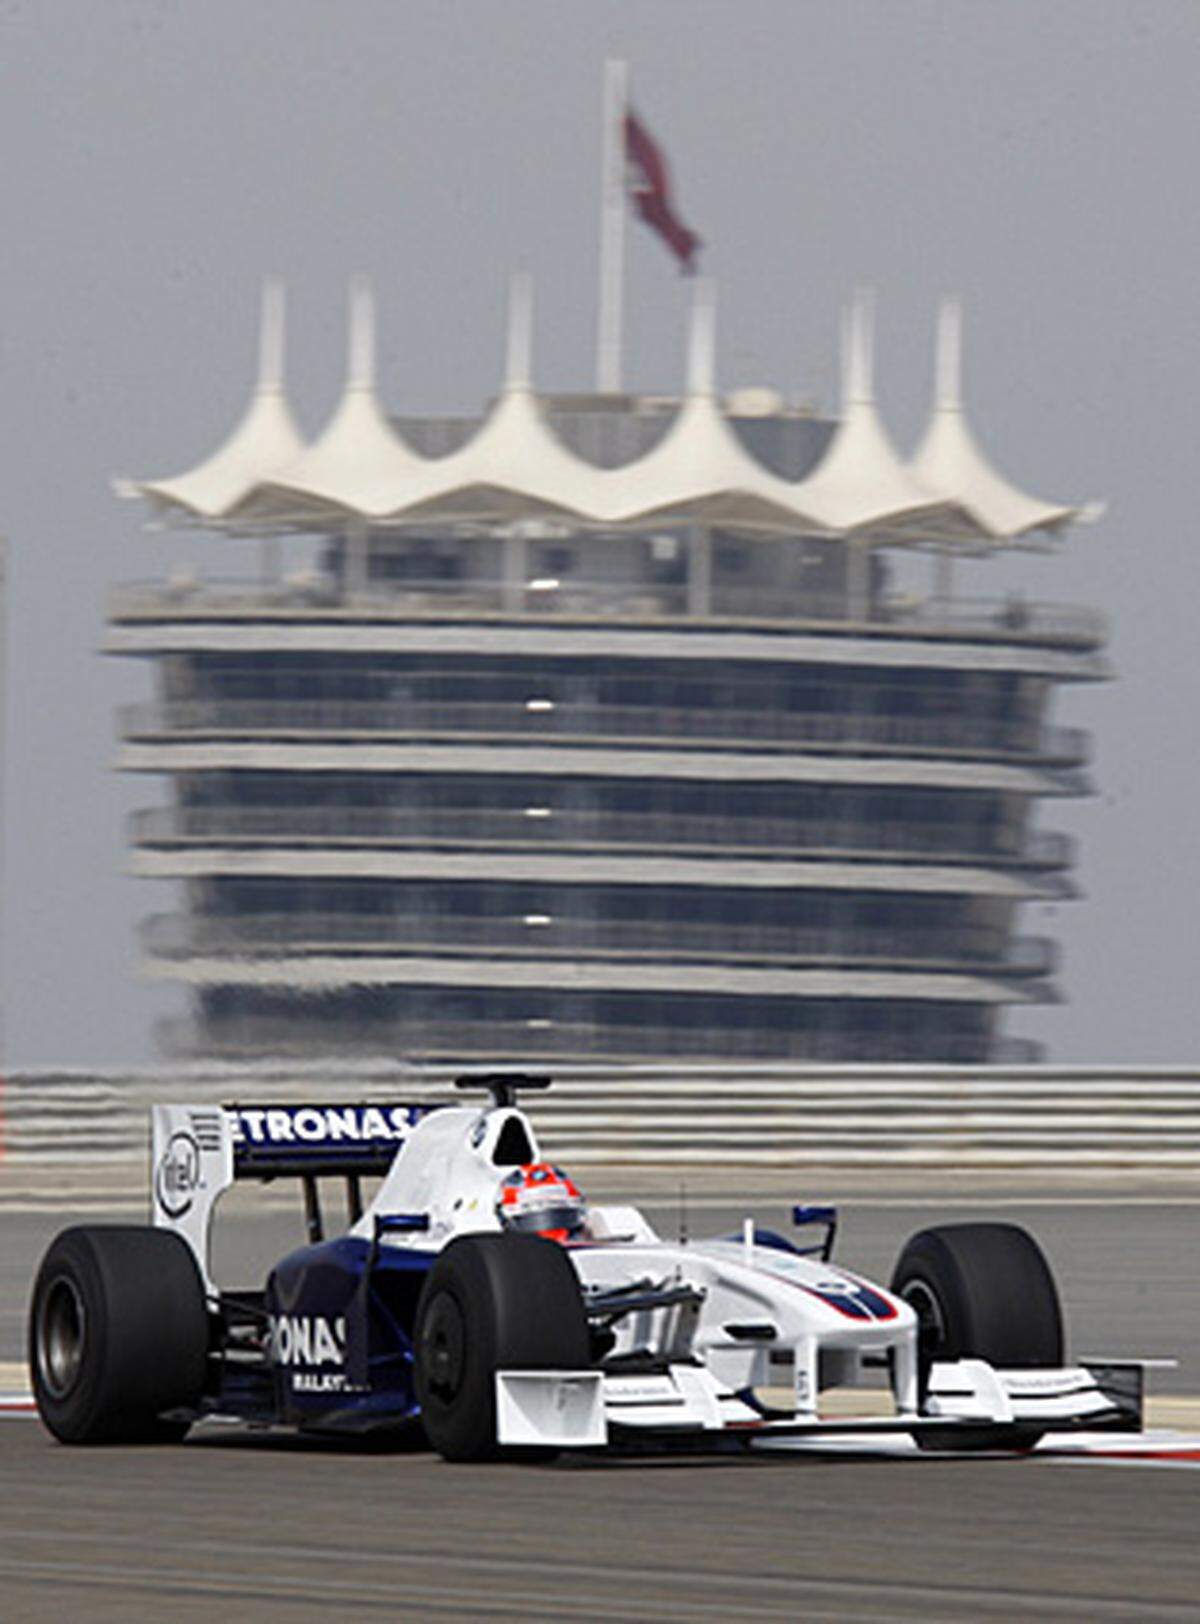 Auch in Bahrain erwartet die Formel-1-Piloten eine moderne Rennstrecke: Der Bahrain International Circuit wurde 2004 eröffnet. Durch seine Lage mitten in der Wüste hält er besondere Herausforderungen für Teams und Fahrer bereit. Die Strecke in Bahrain gilt als die sicherste der Welt.